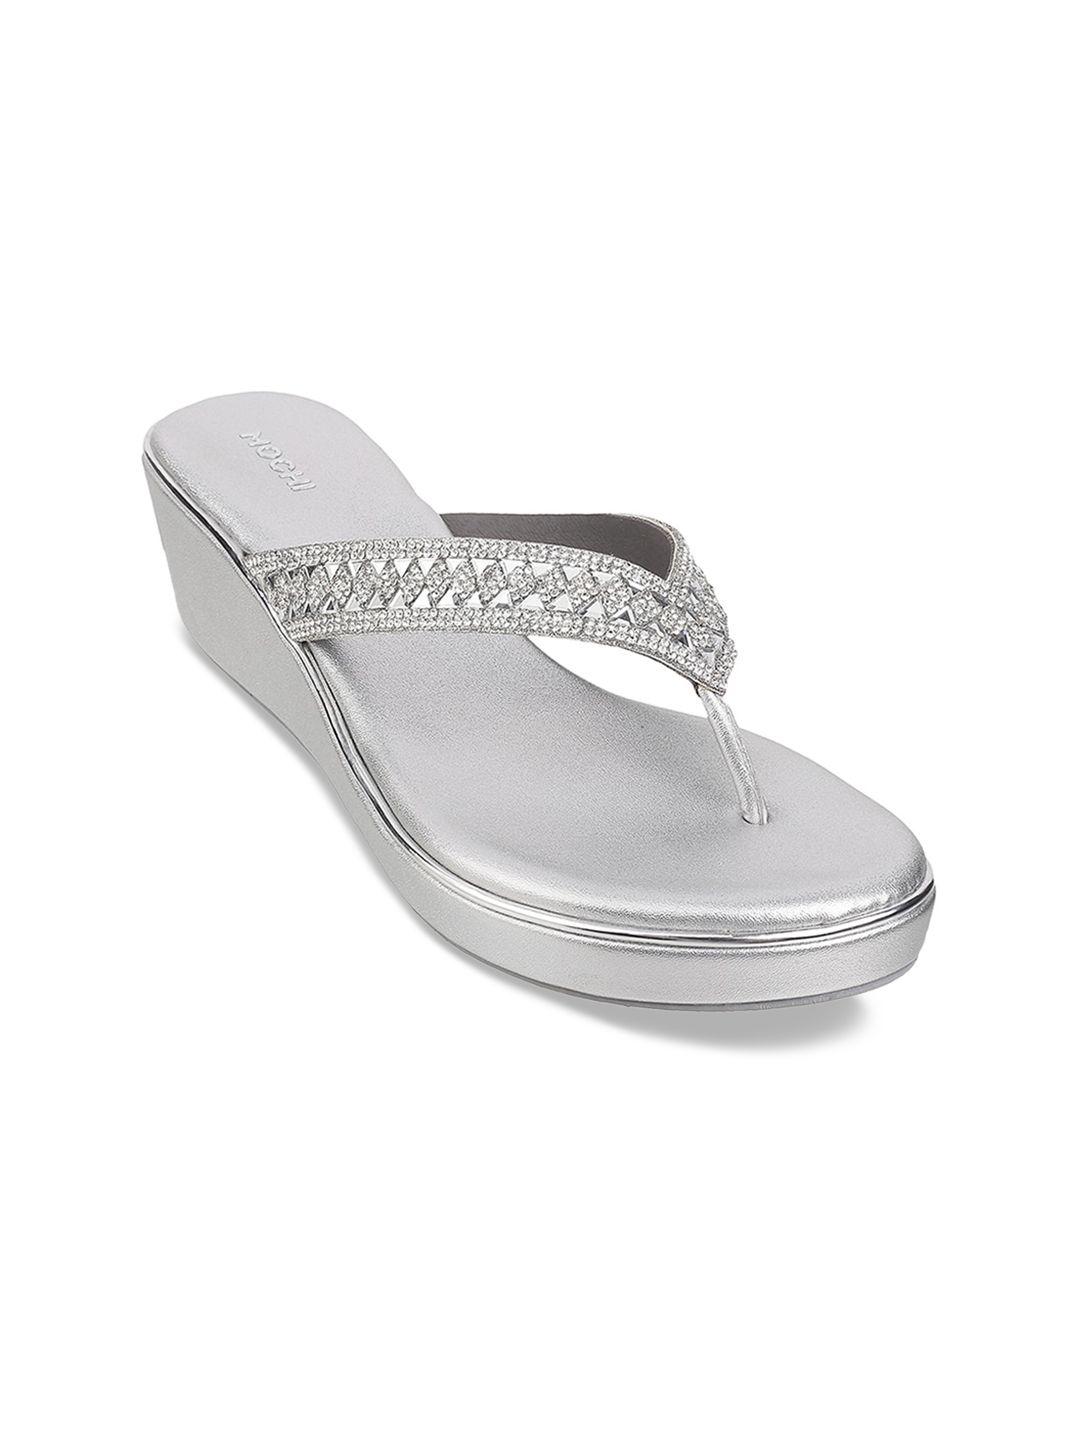 mochi embellished ethnic platform sandals heels